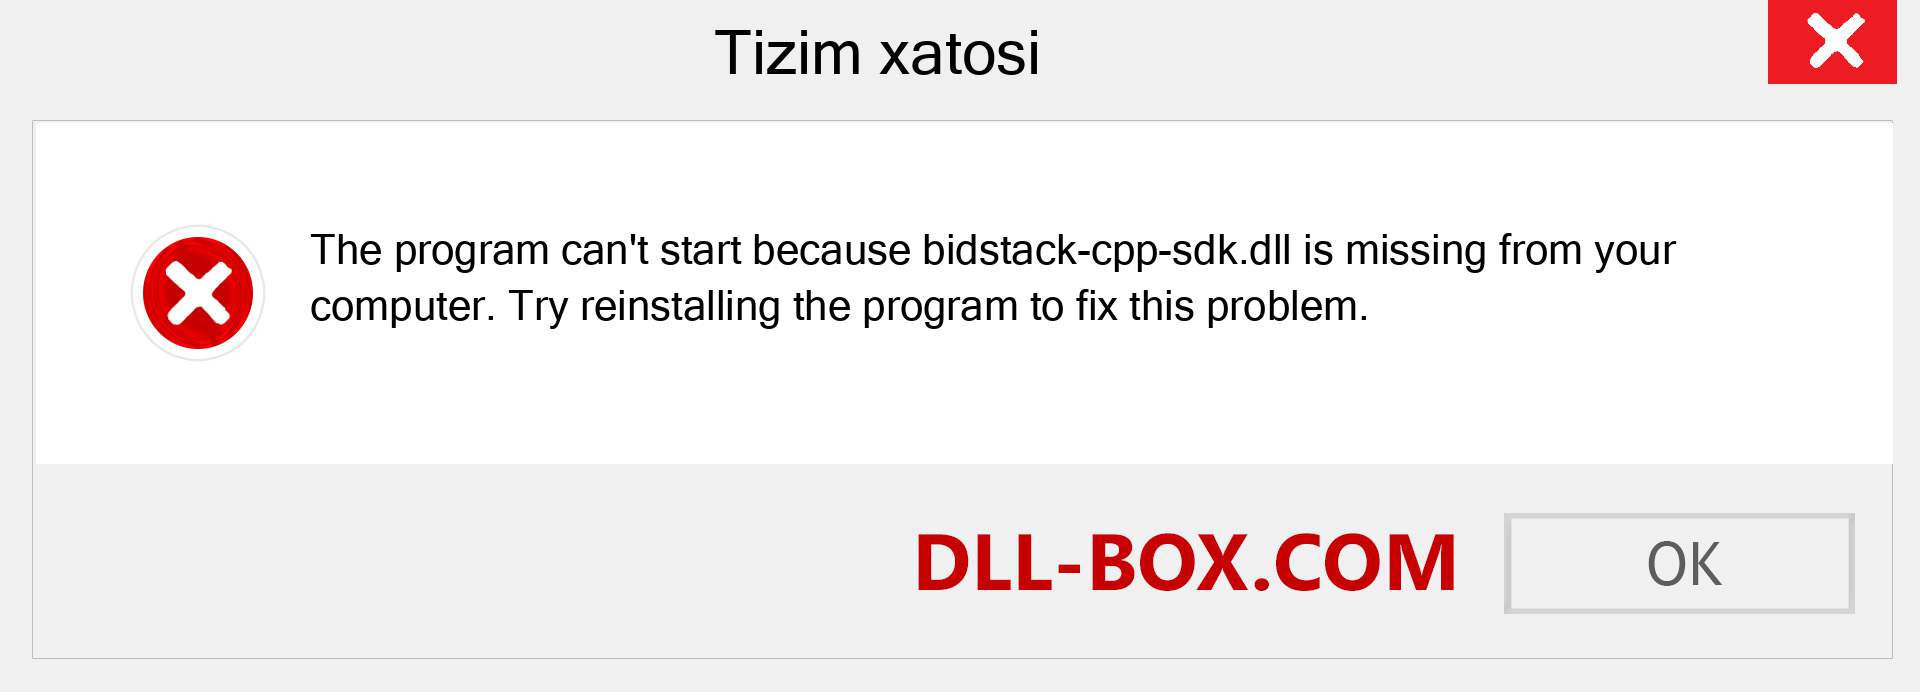 bidstack-cpp-sdk.dll fayli yo'qolganmi?. Windows 7, 8, 10 uchun yuklab olish - Windowsda bidstack-cpp-sdk dll etishmayotgan xatoni tuzating, rasmlar, rasmlar